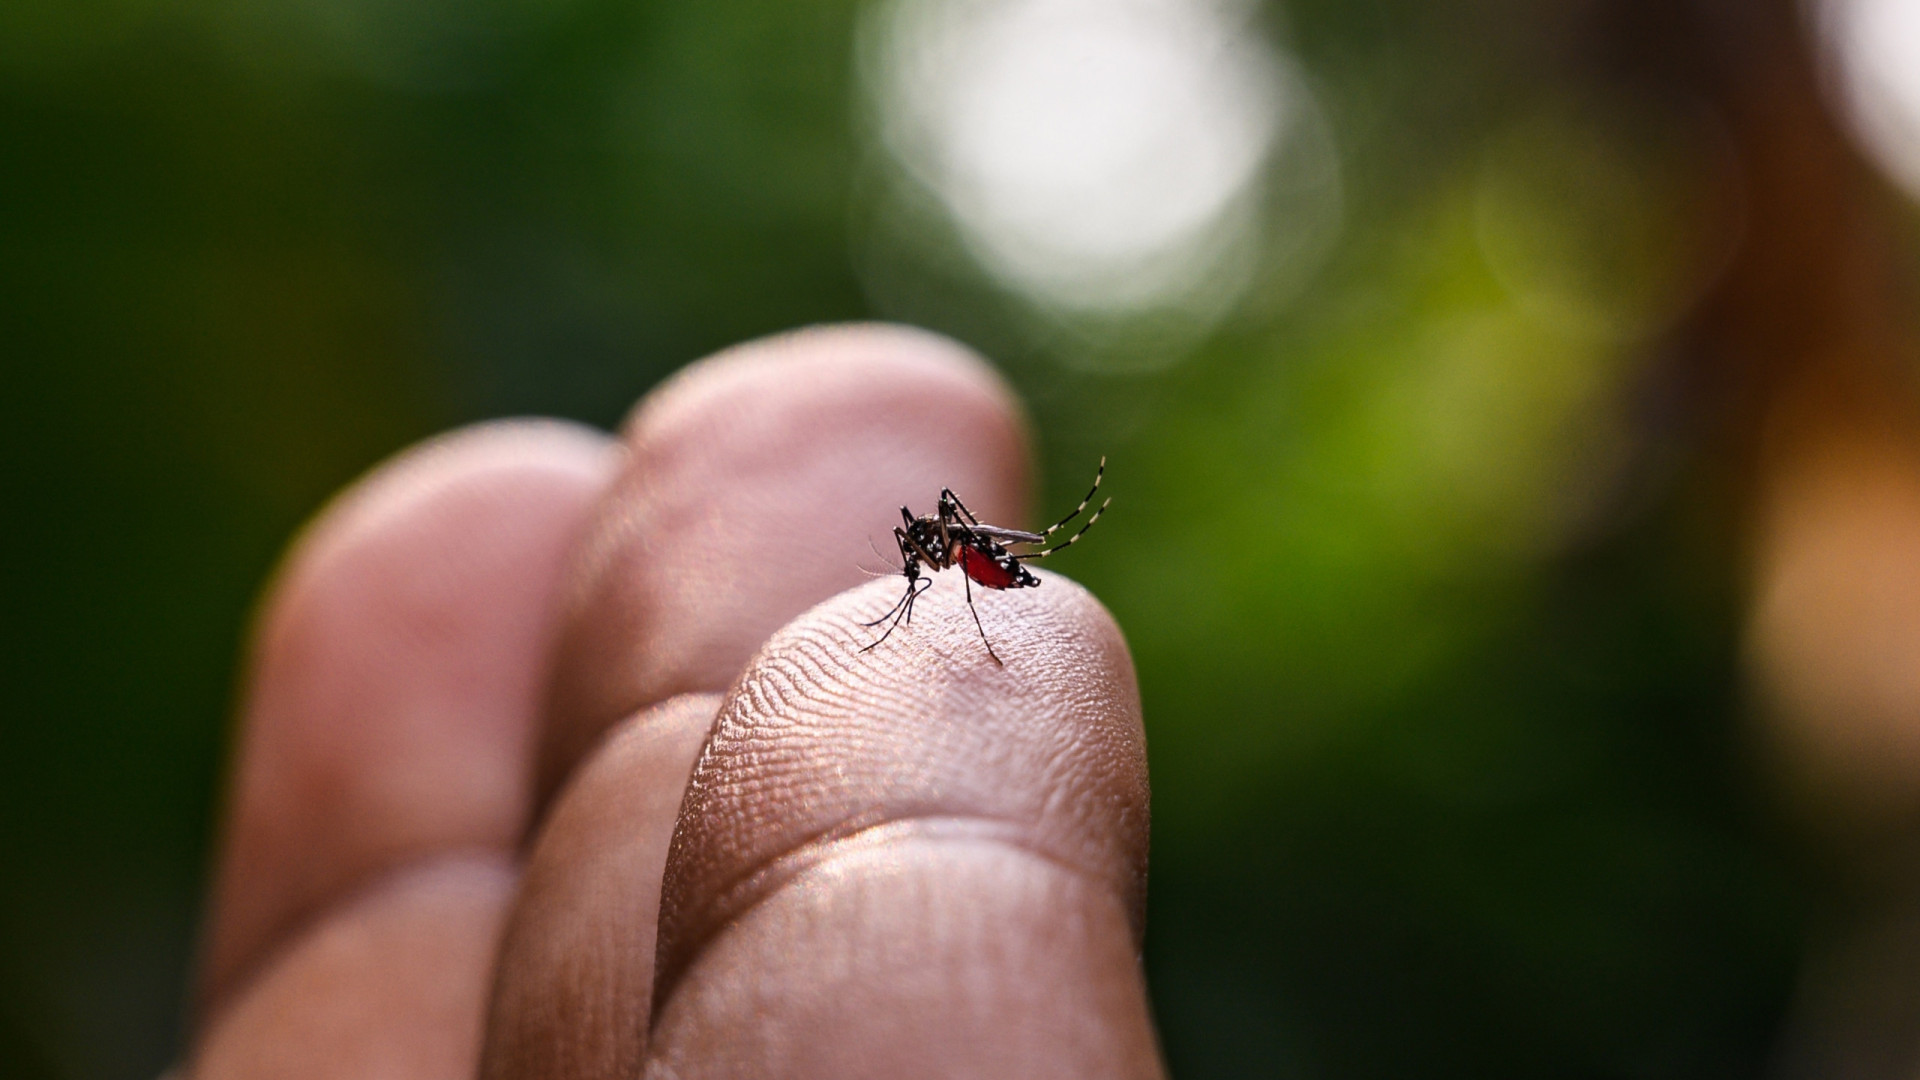 Distrito Federal, Minas Gerais e Acre têm os maiores índices de transmissão da dengue no Brasil